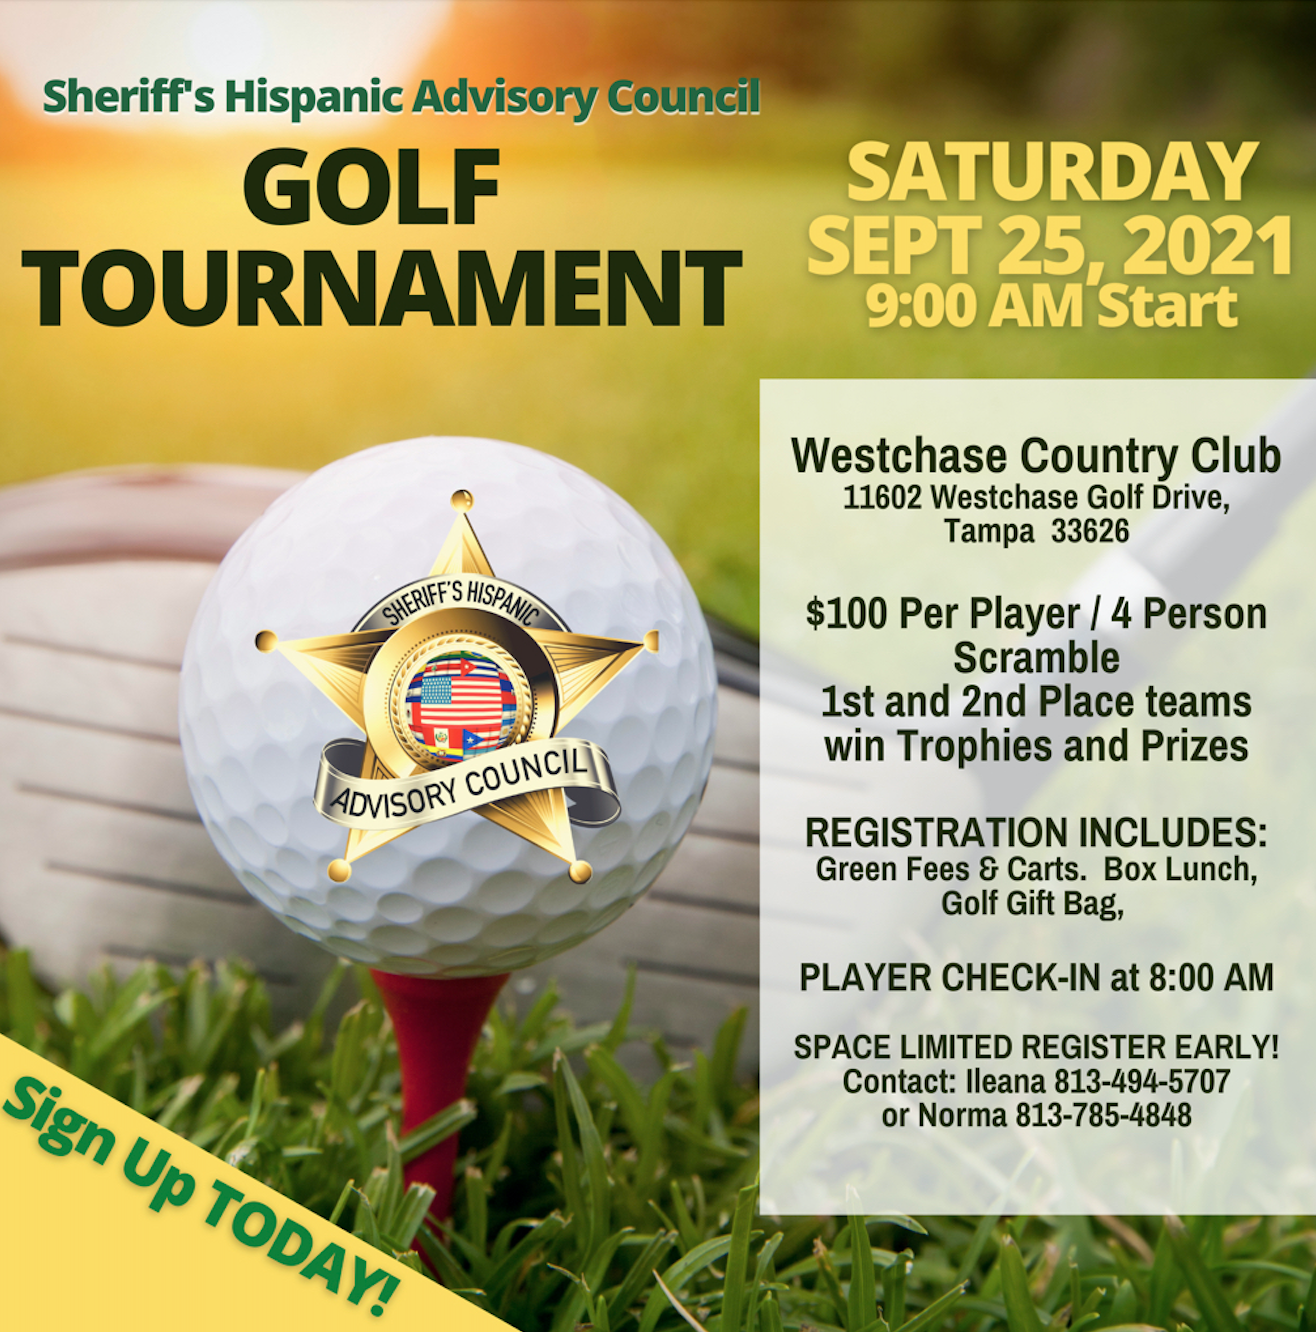 Sheriff's Hispanic Advisory Council Golf Tournament